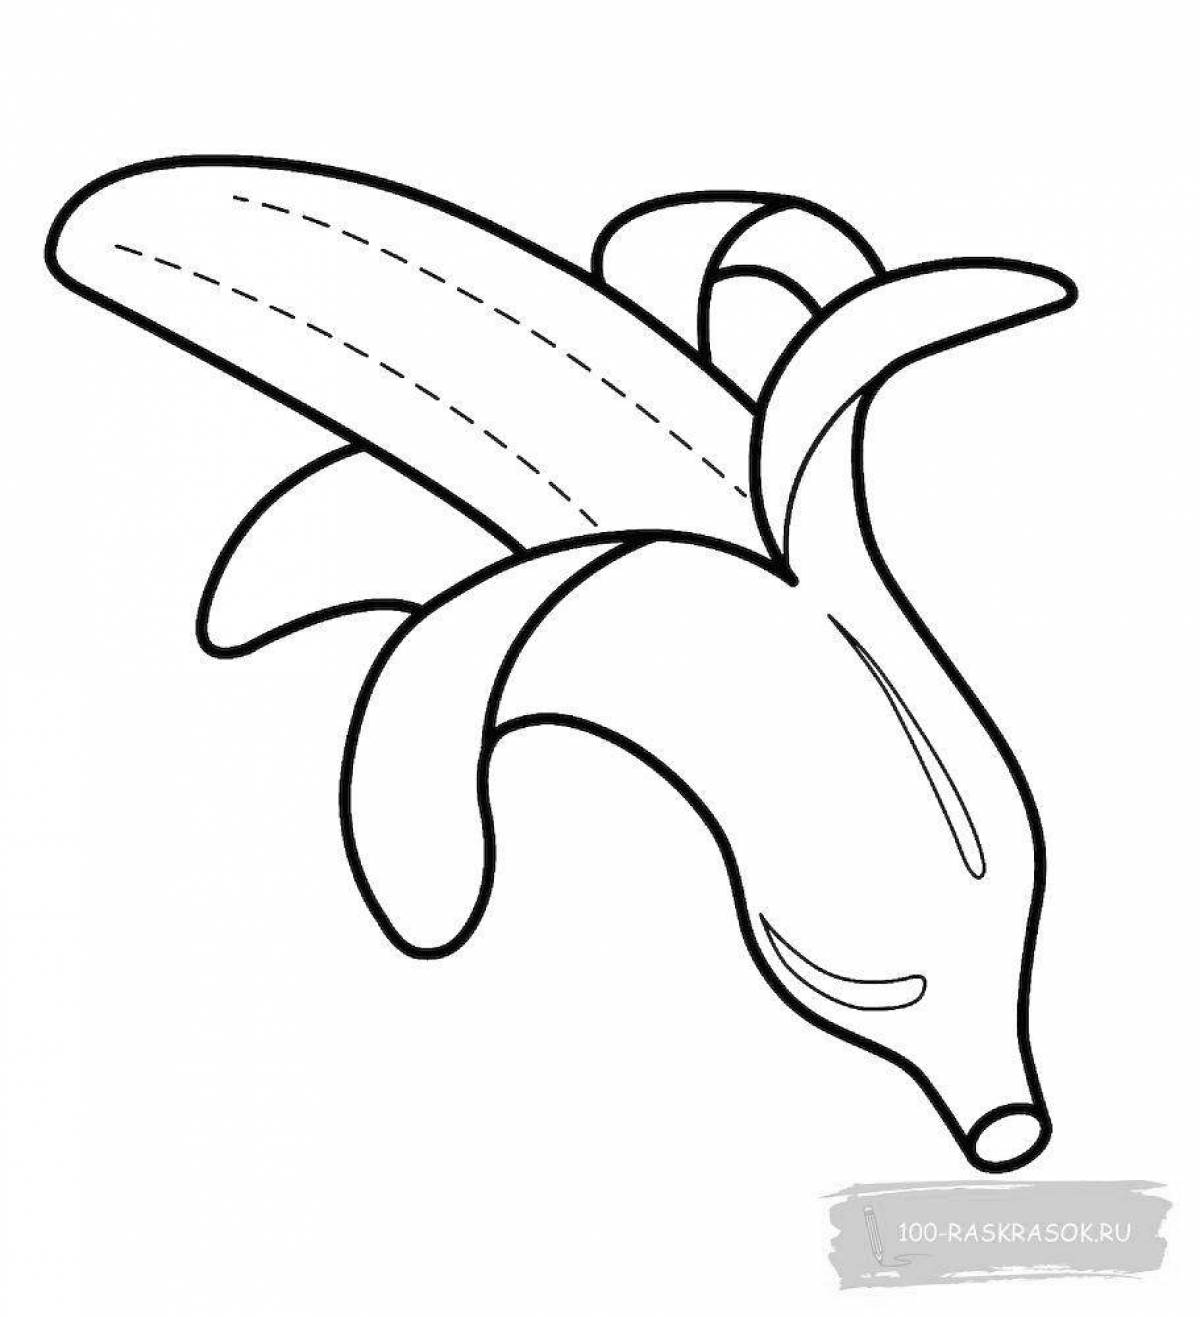 Красочная банановая раскраска для детей 2-3 лет